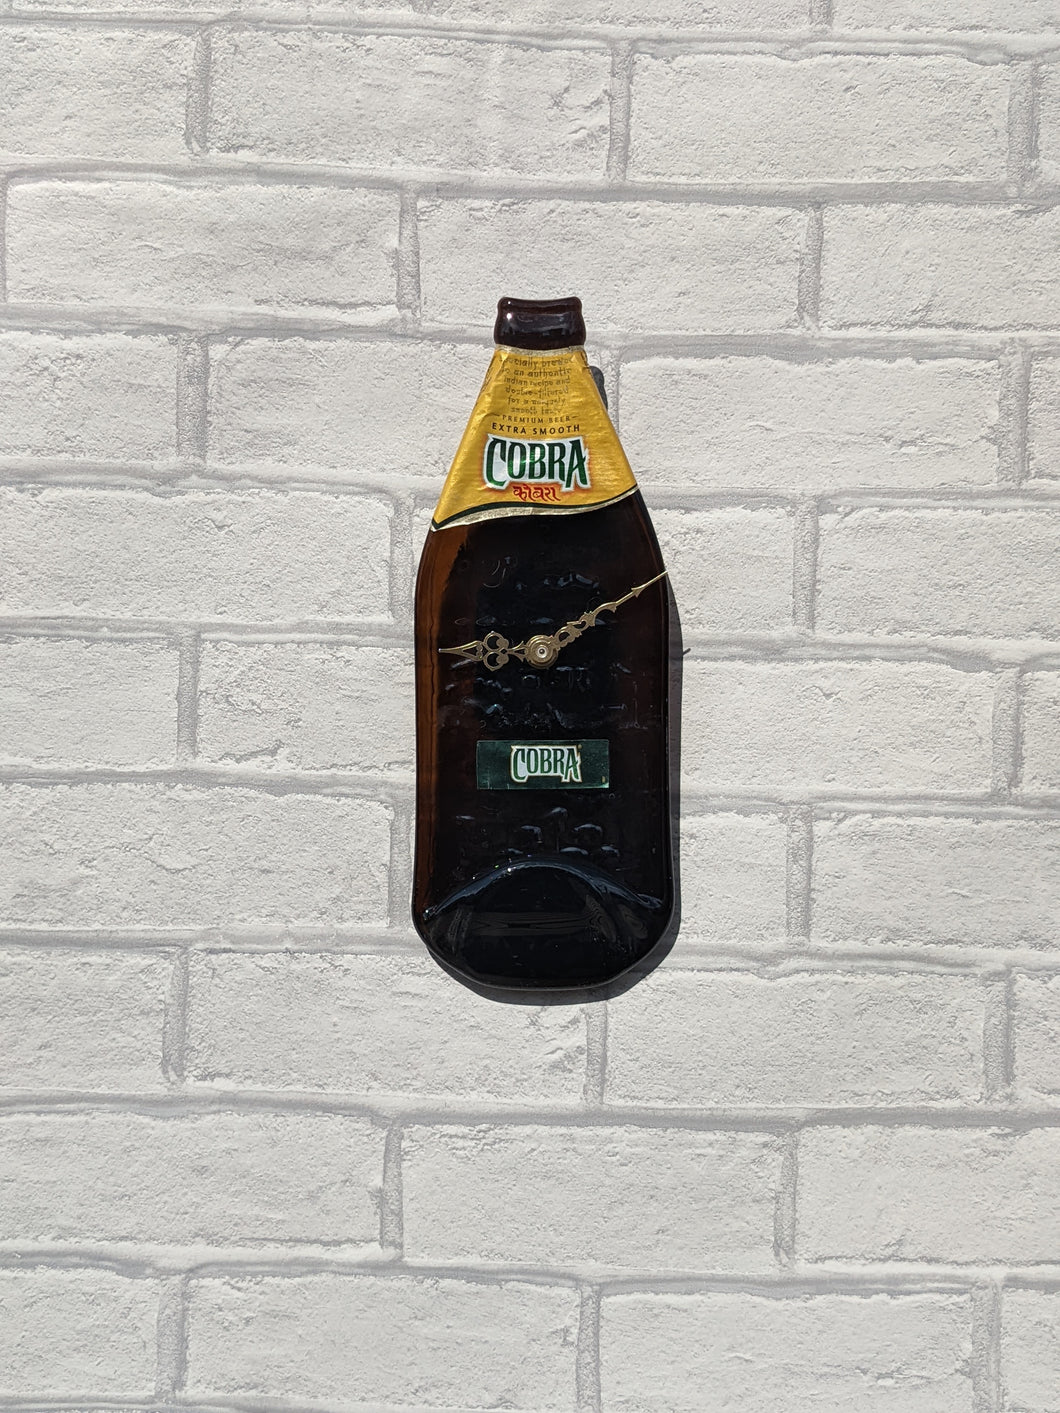 Cobra beer bottle clock